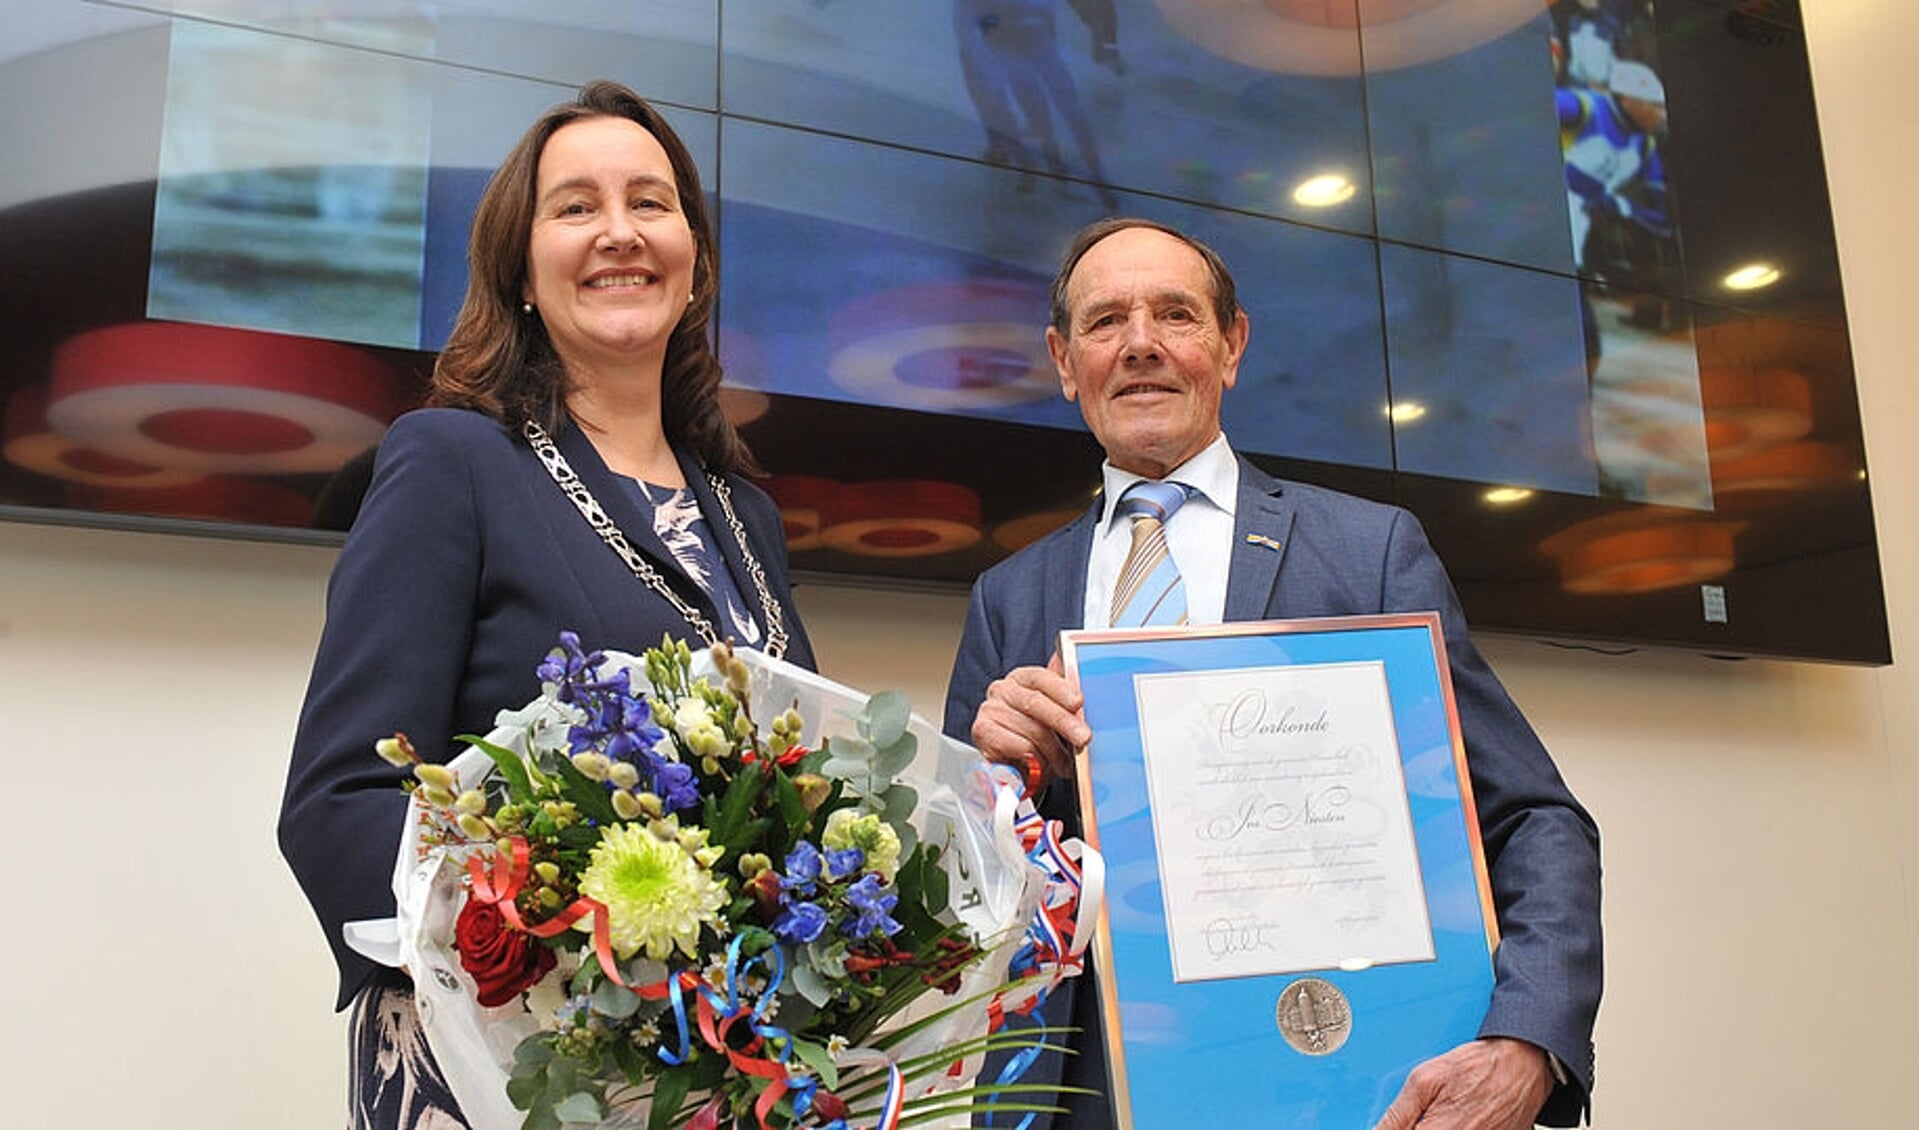 Jos Niesten heeft de erepenning van de gemeente Heemskerk ontvangen van burgemeester Mieke Baltus.